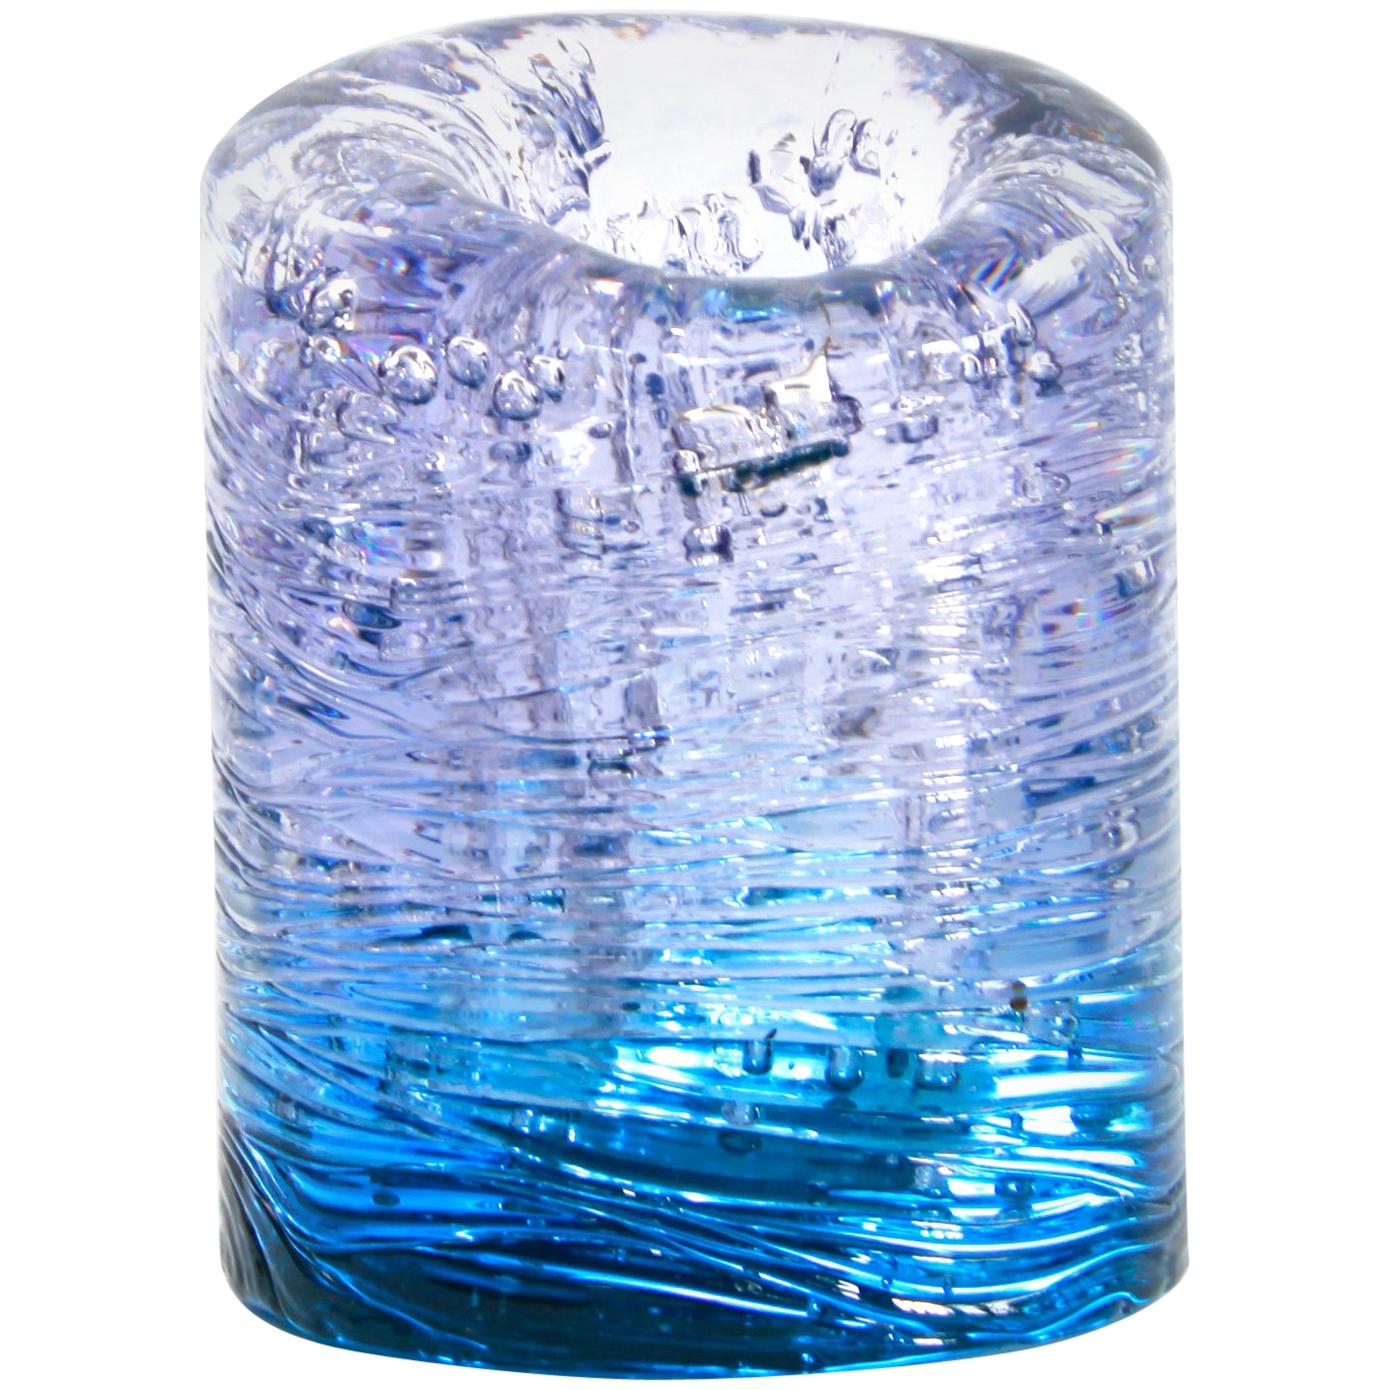 Jungle Contemporary Vase, Small Bicolor Transparent and Blue by Jacopo Foggini